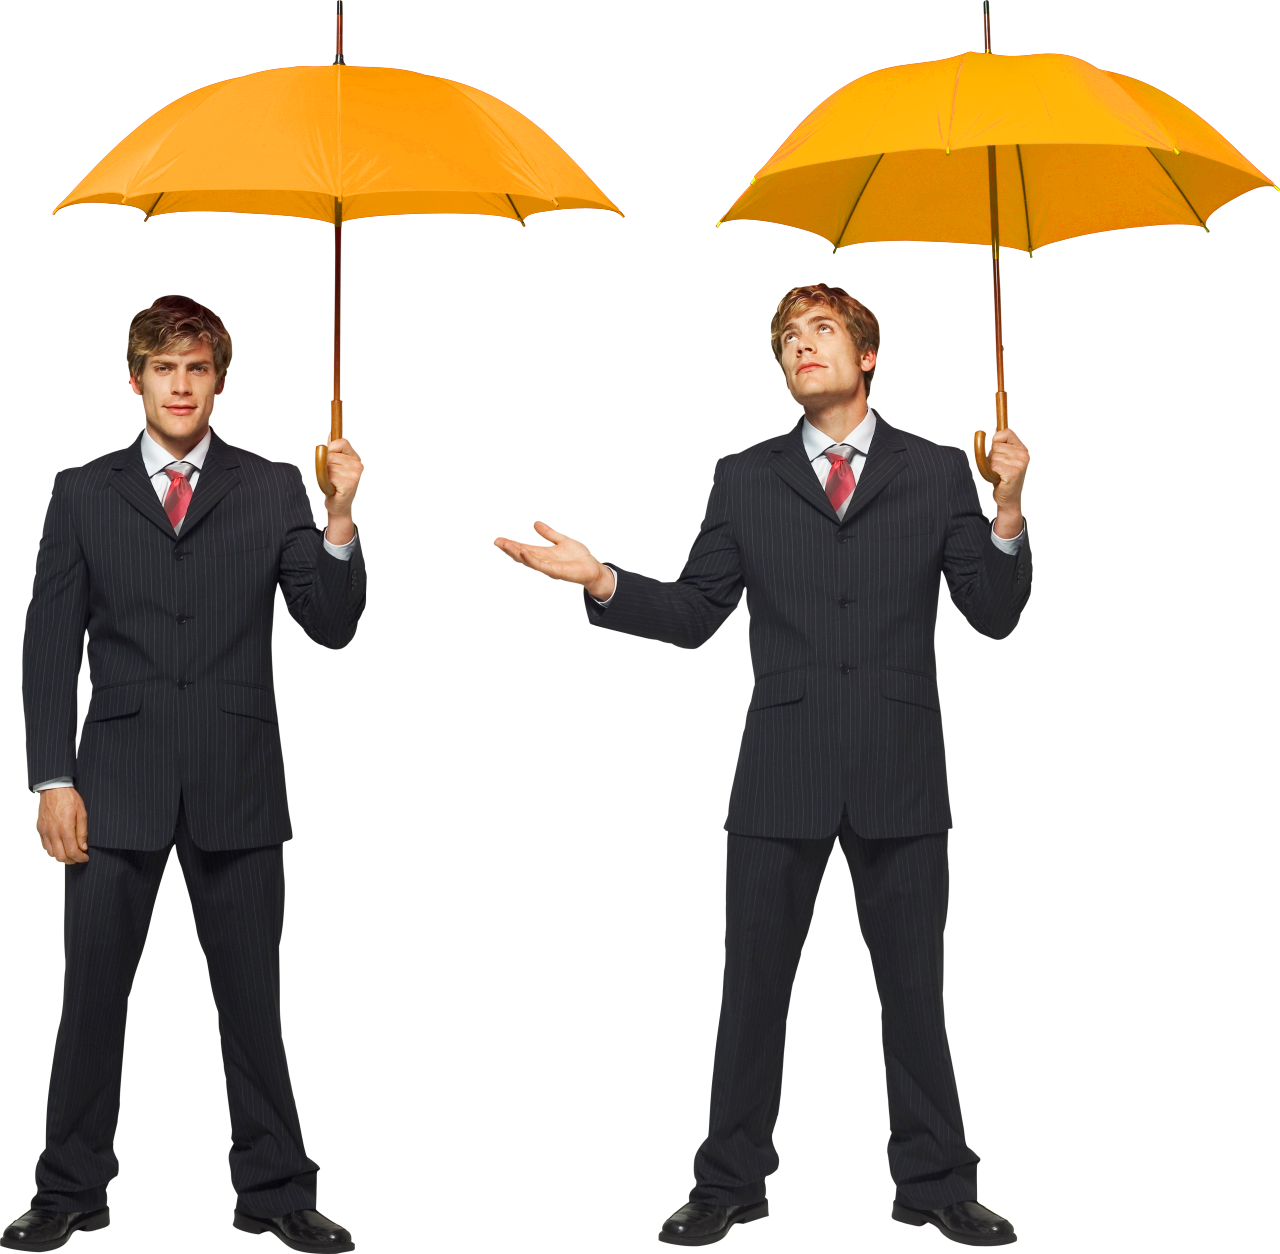 Kaksi miestä sateenvarjot kädessä sinisellä taustalla. Kuvan edessä Onnistutaan yhdessä -teksti.